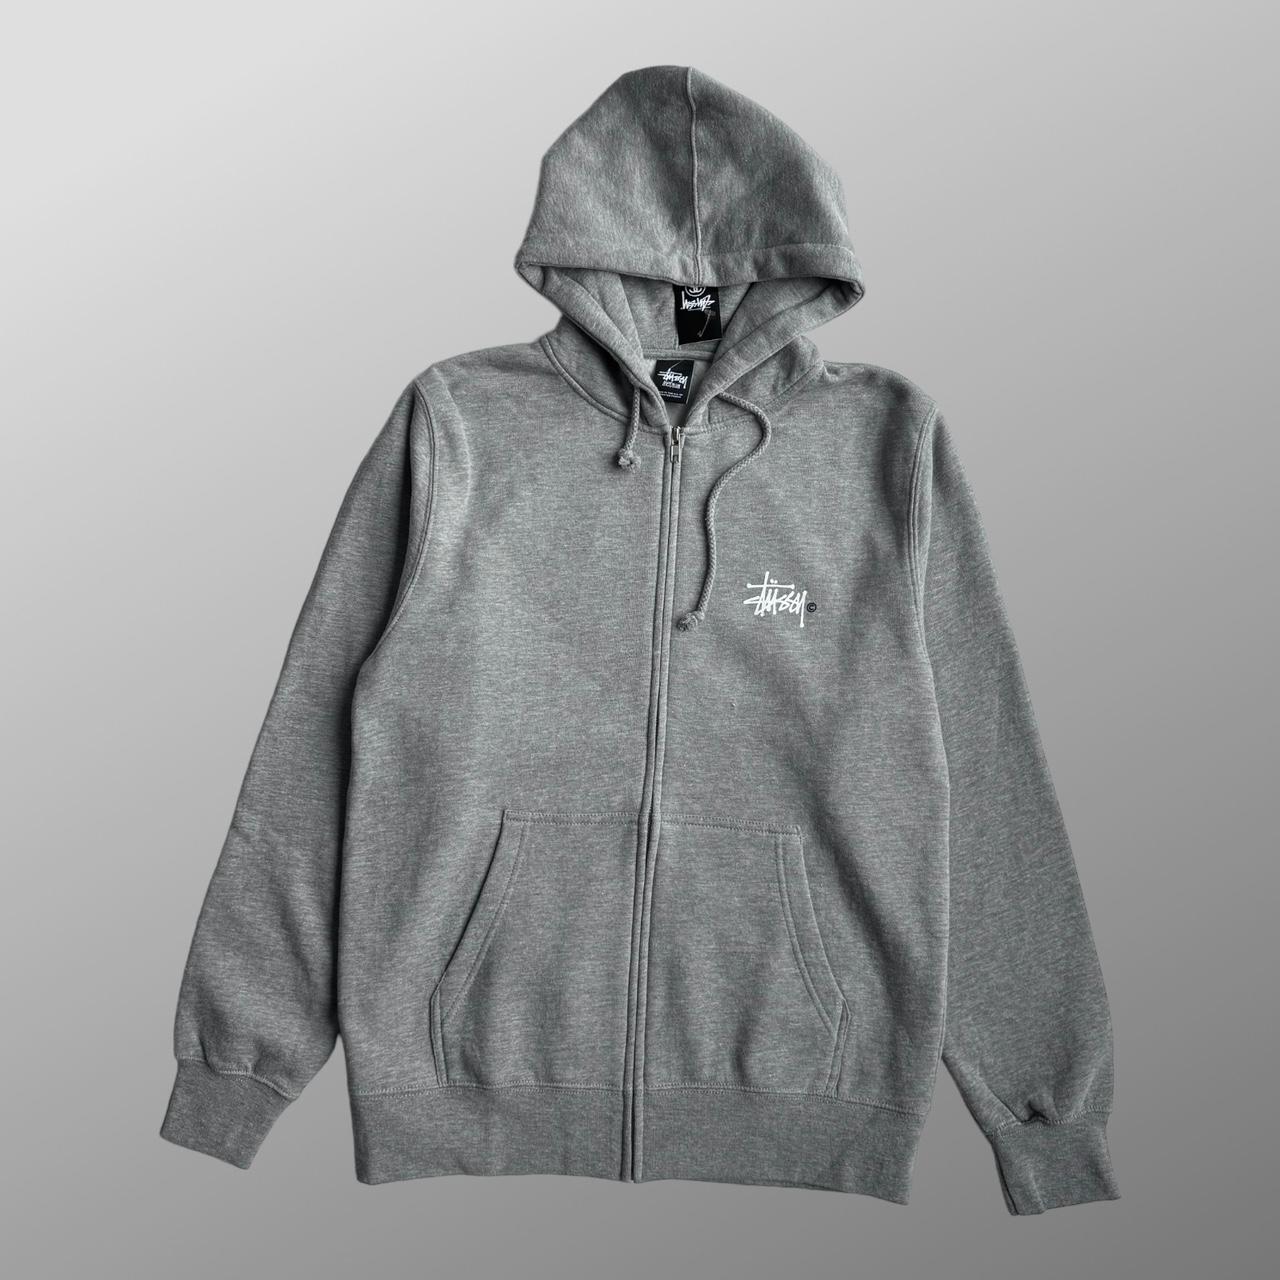 Stussy basic zip up hoodie heather grey - big logo... - Depop